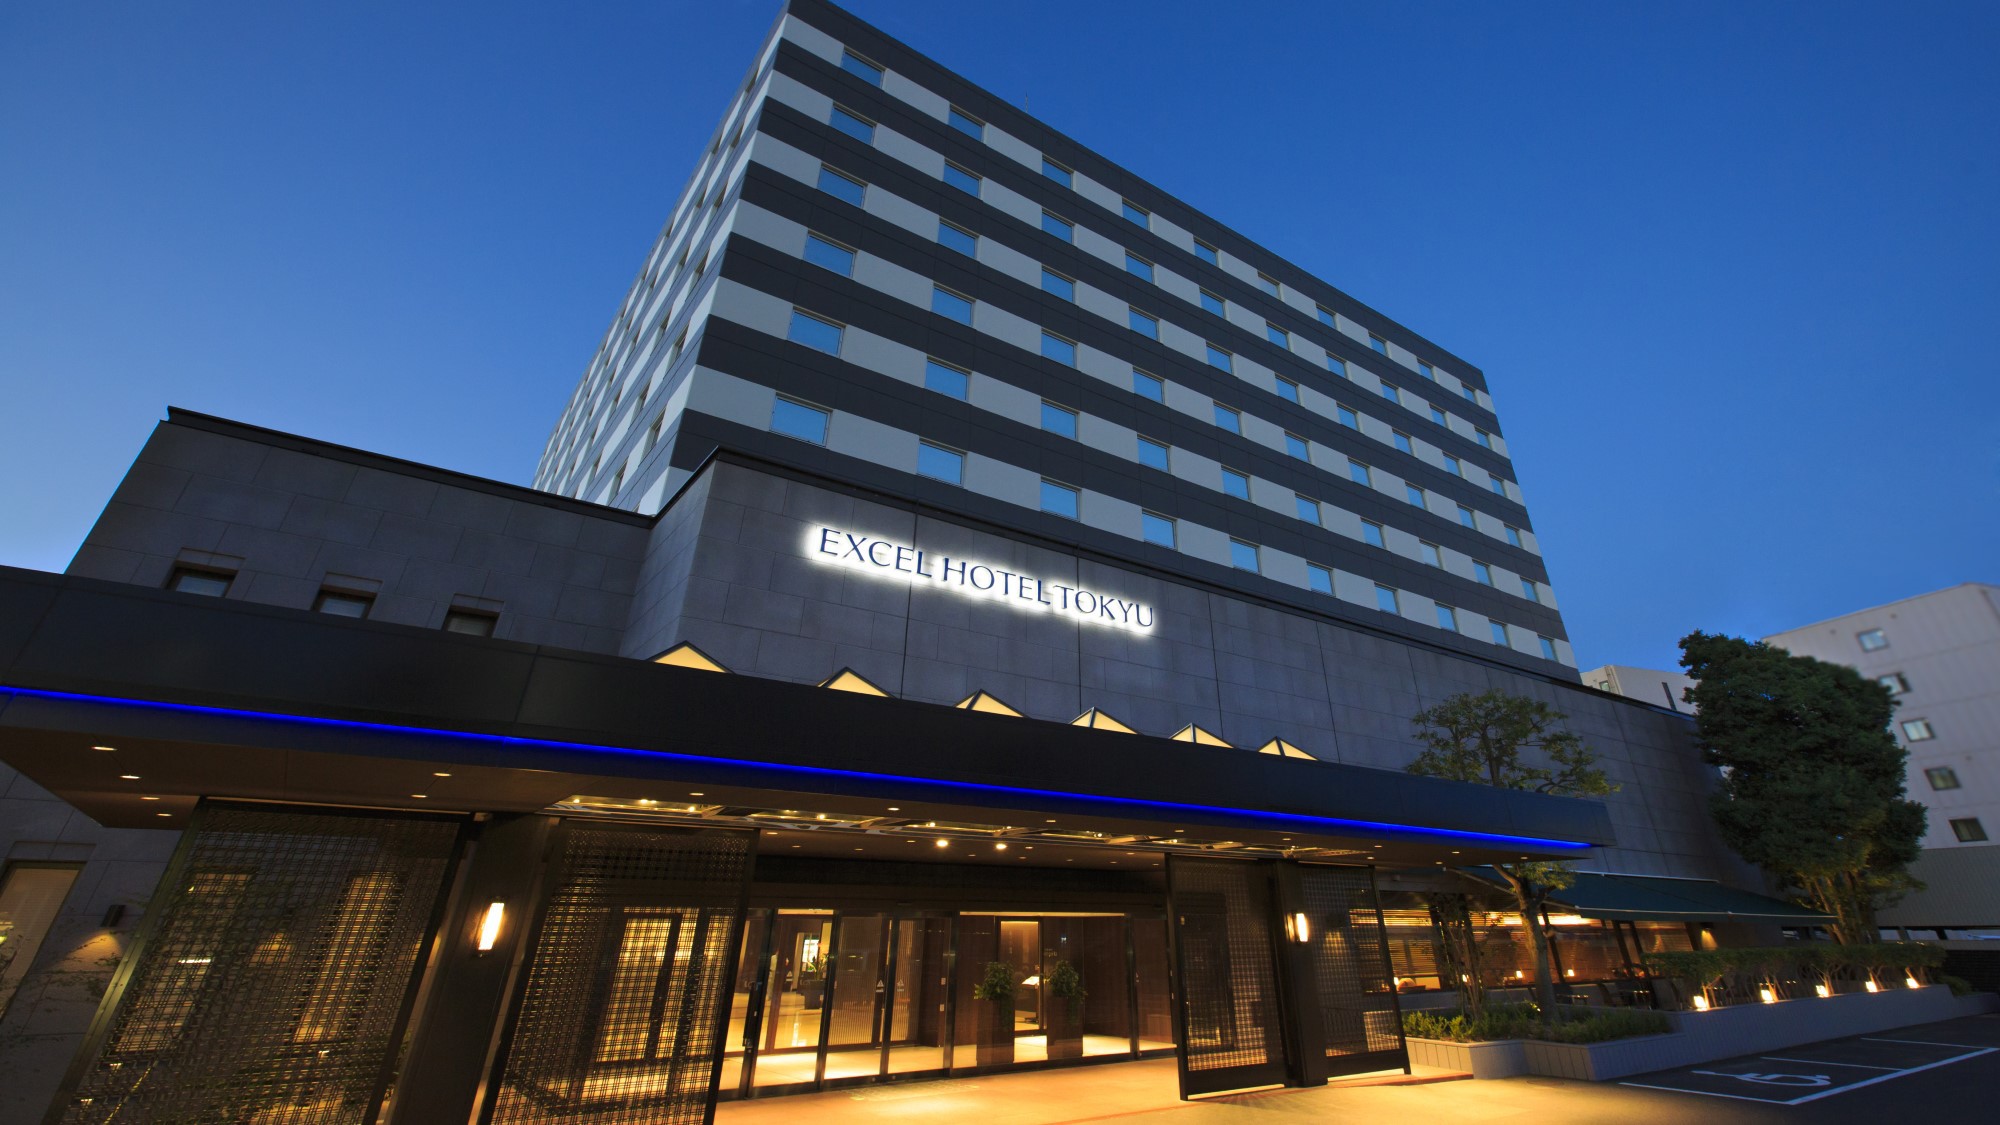 <b>島根県</b> 五十猛のホテルを詳しく調べました。: 【格安】ビジネスホテル予約